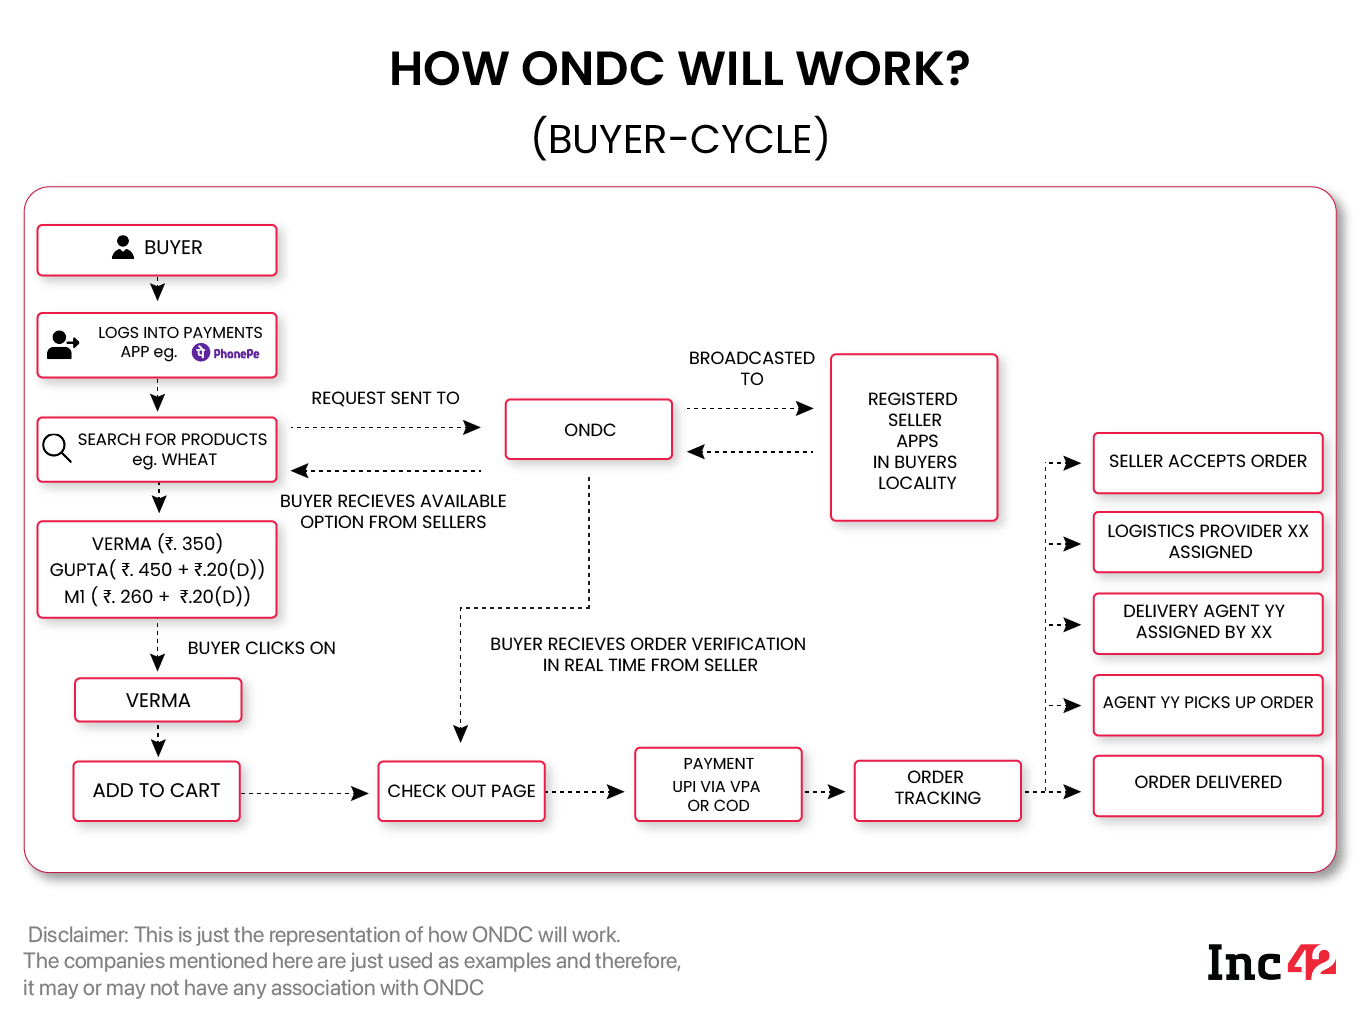 Buyer Cycle On ONDC